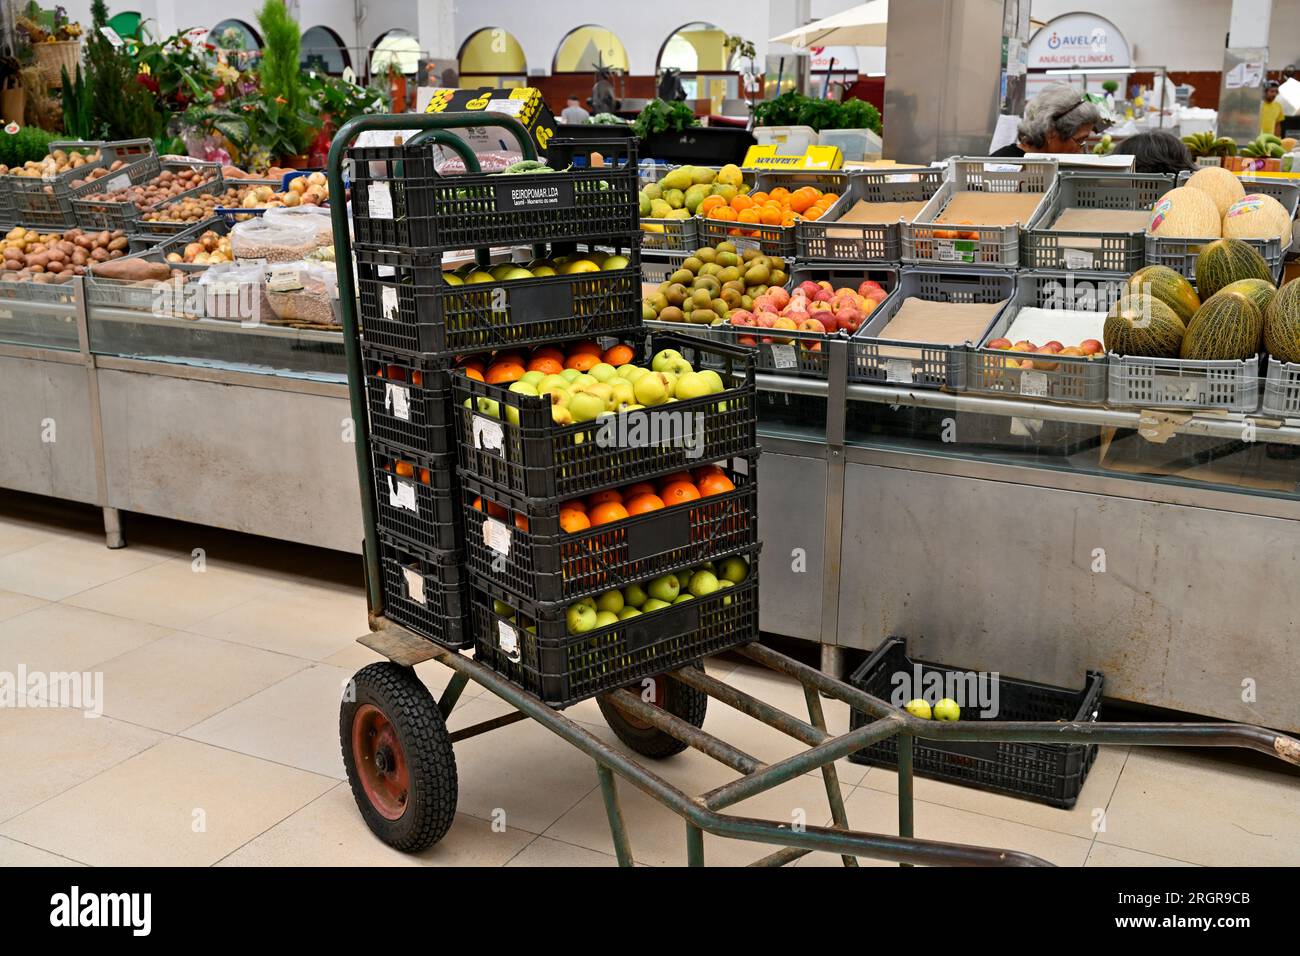 Trolley mit Obstkartons zum Auffüllen im lokalen Markt Mercado Coletivo Aveiro mit Verkaufsständen, die frisches Obst, Gemüse, Portugal, verkaufen Stockfoto